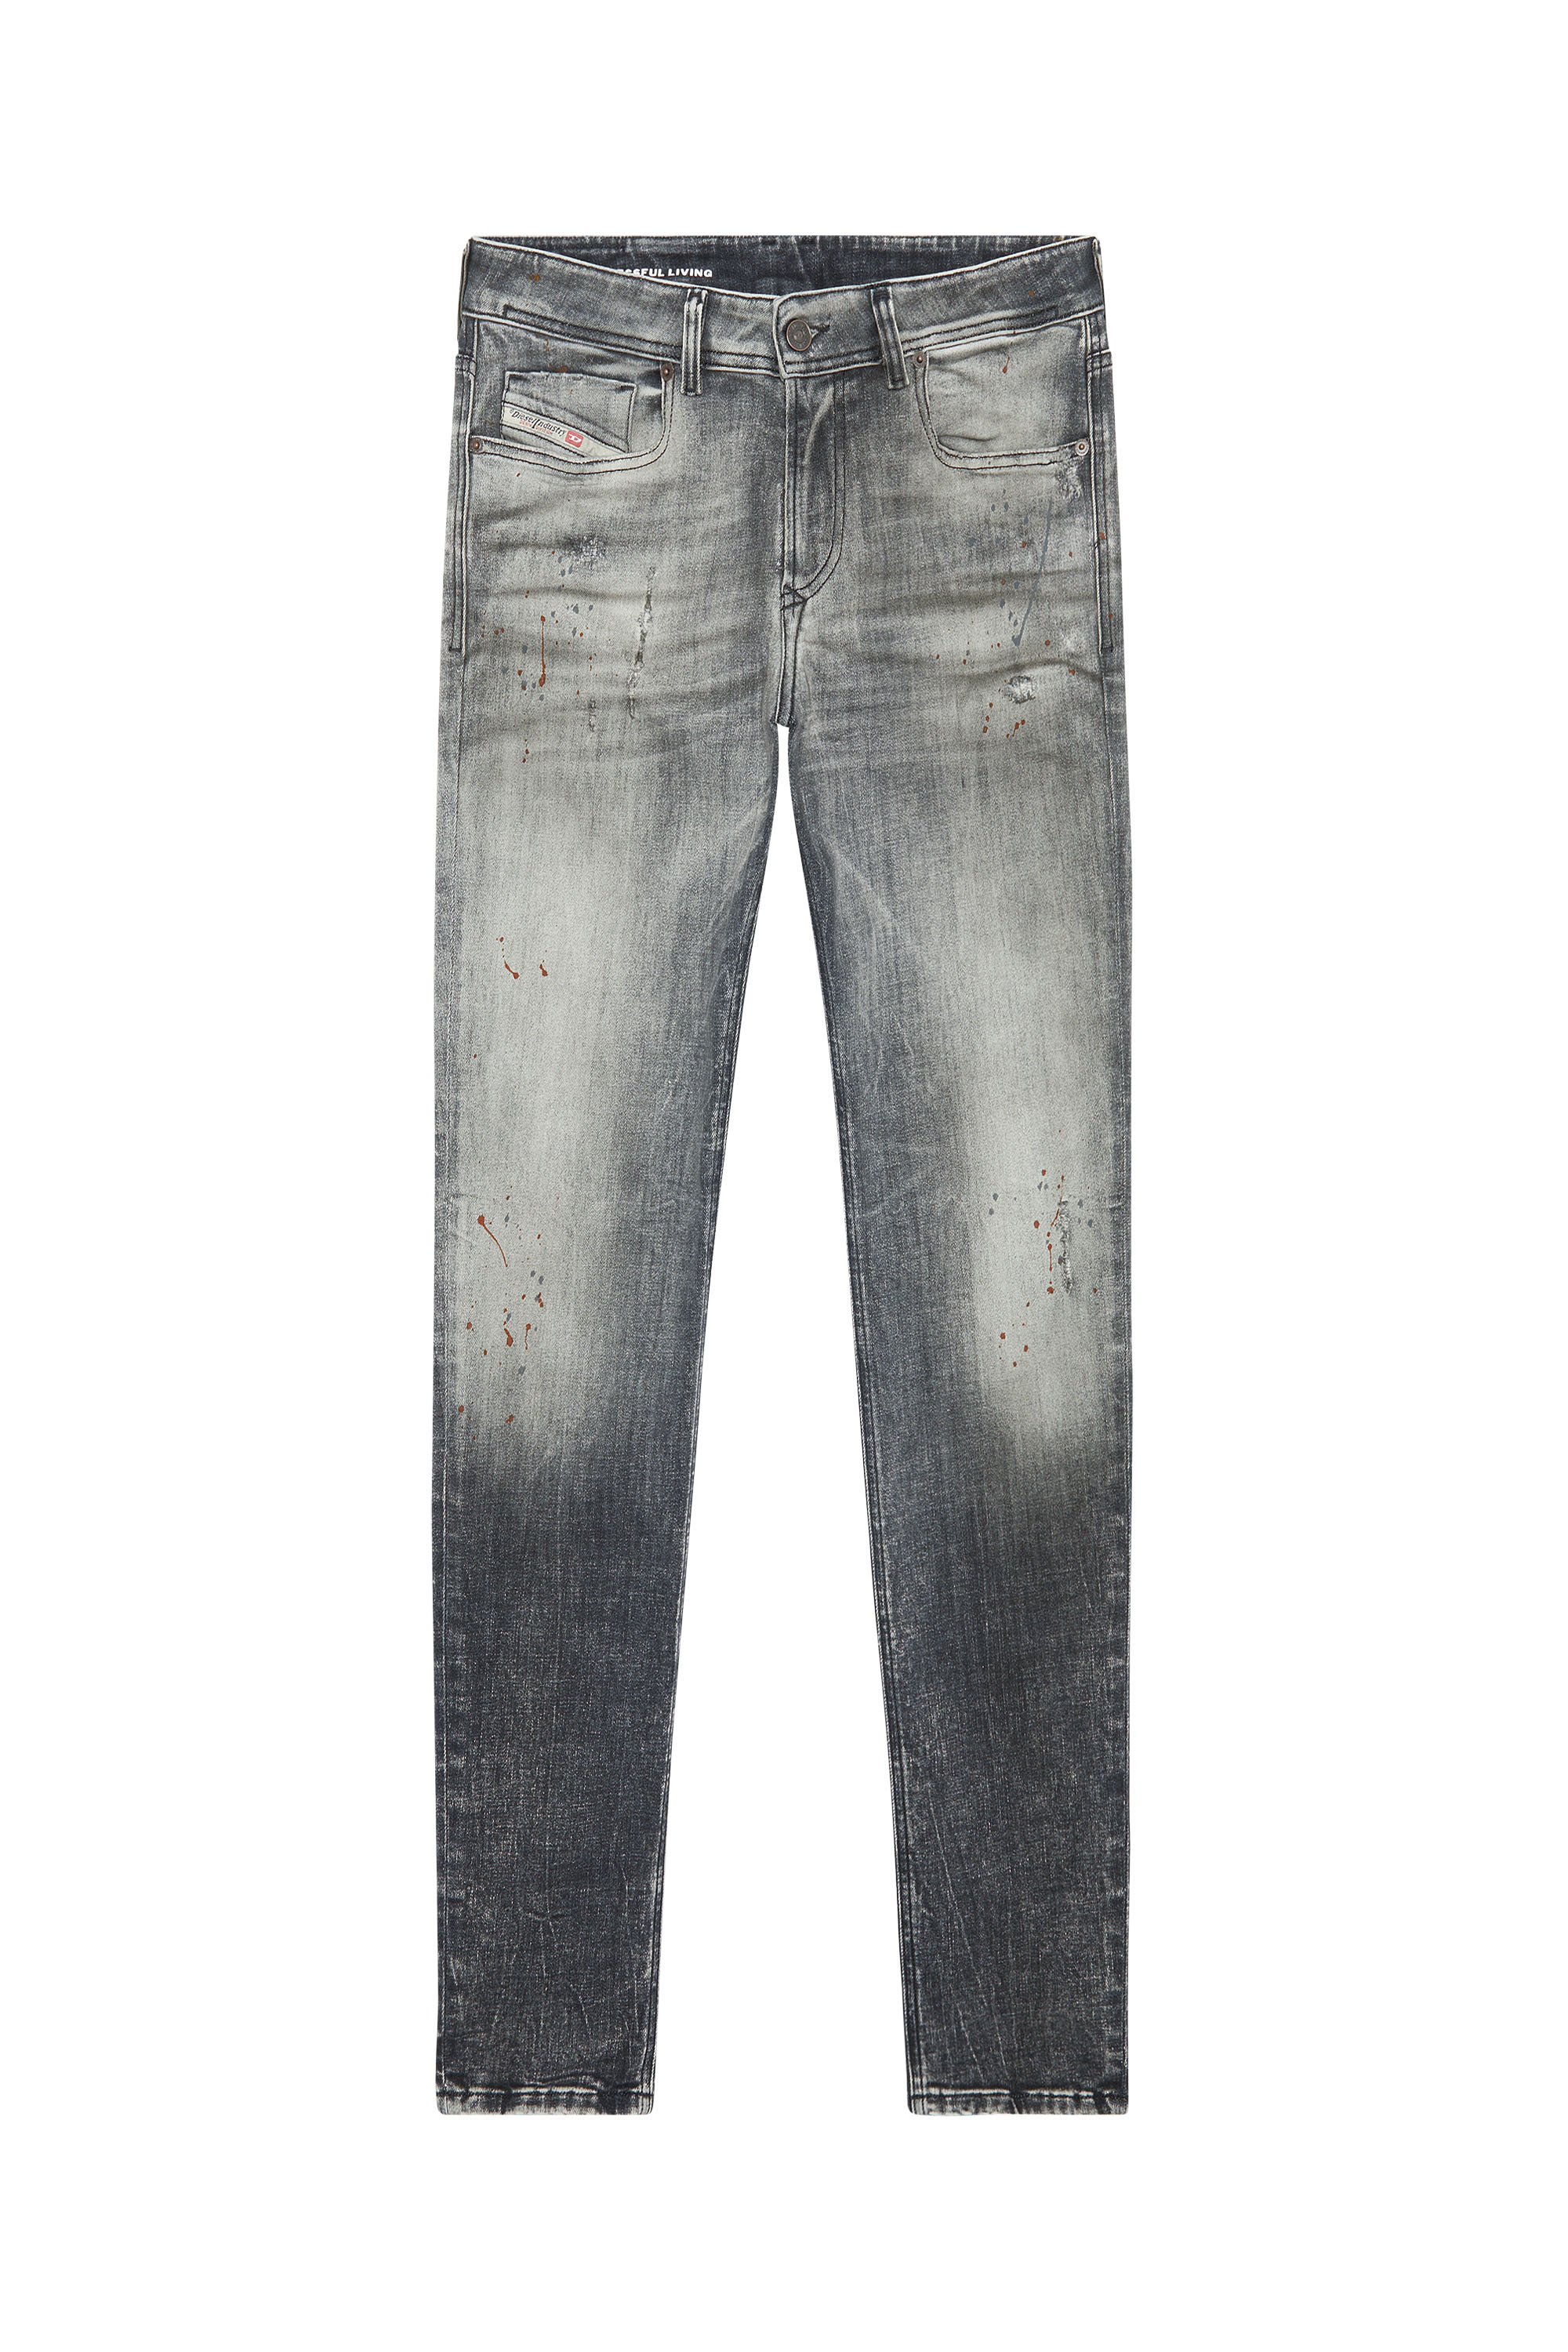 Diesel - Skinny Jeans 1979 Sleenker 09E70, Black/Dark grey - Image 5